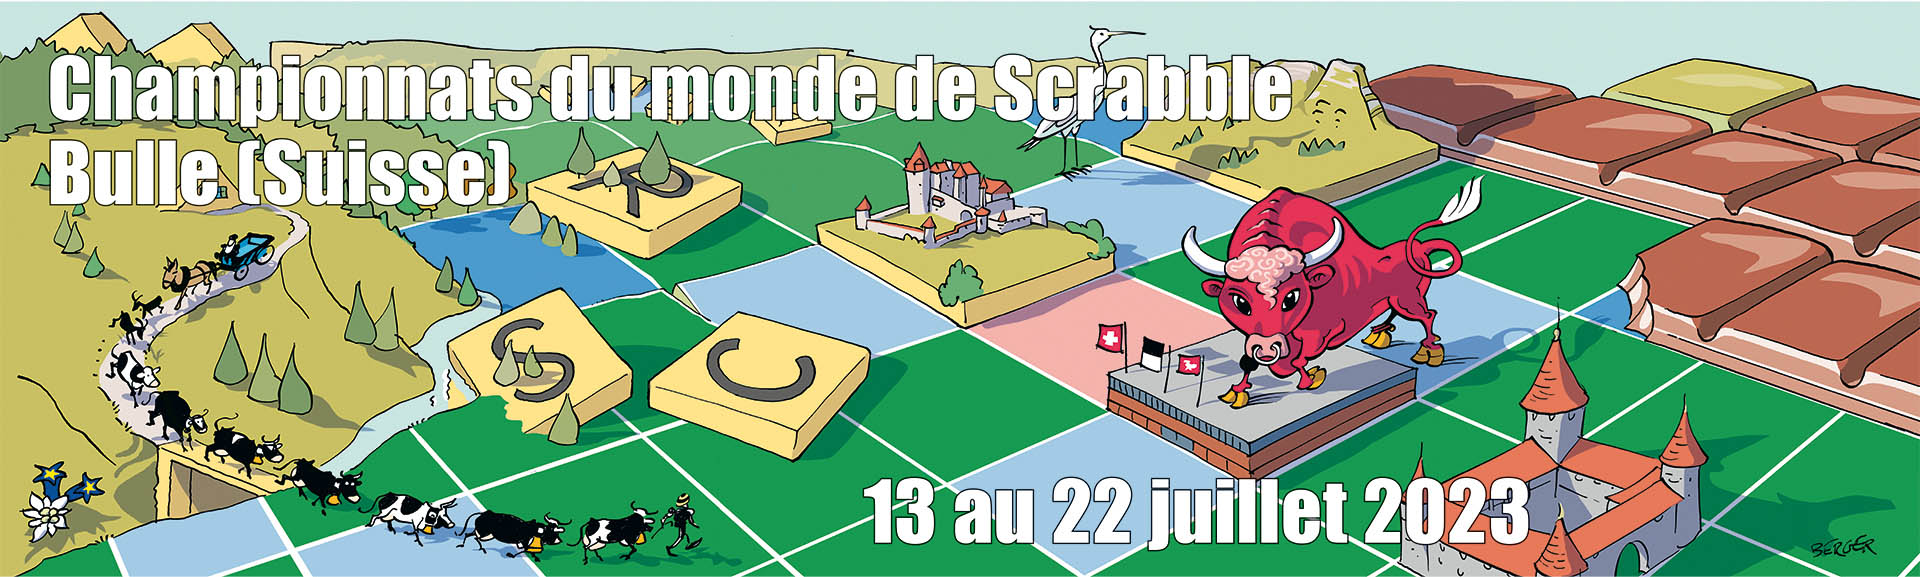 51es Championnats du monde de Scrabble francophone à Bulle (Suisse), du 13 au 22 juillet 2023  